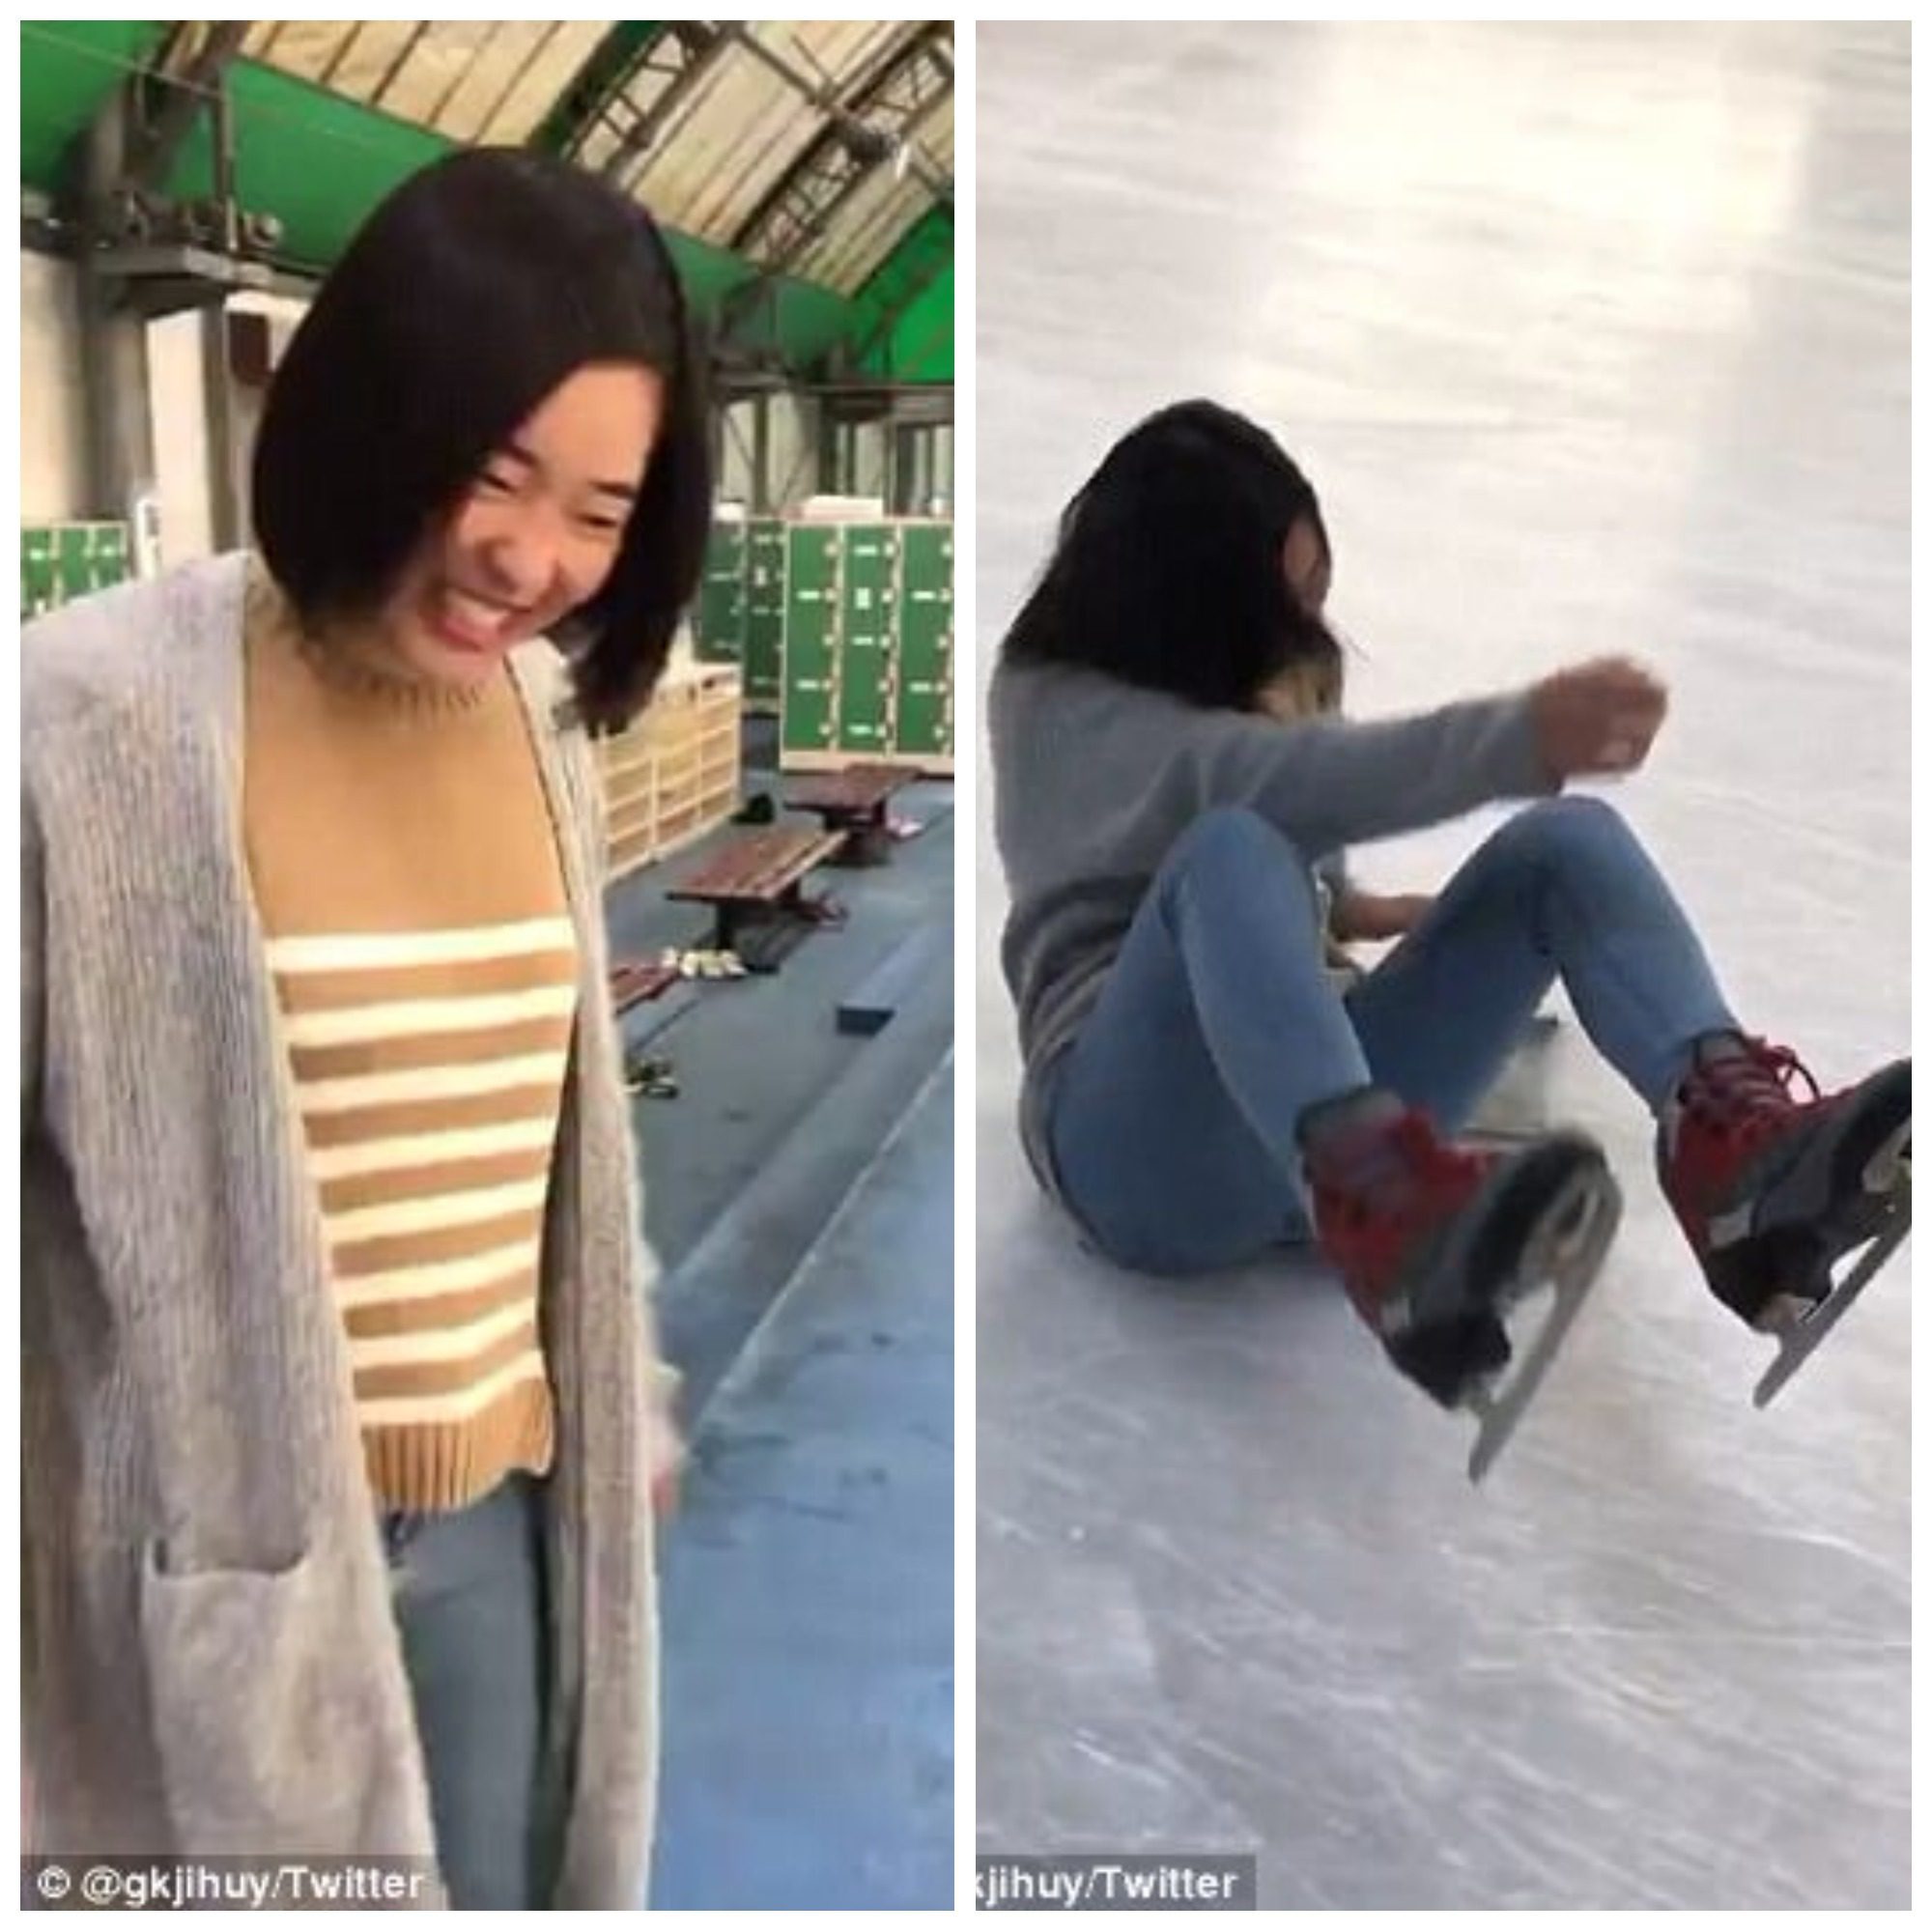 japanese teen skating